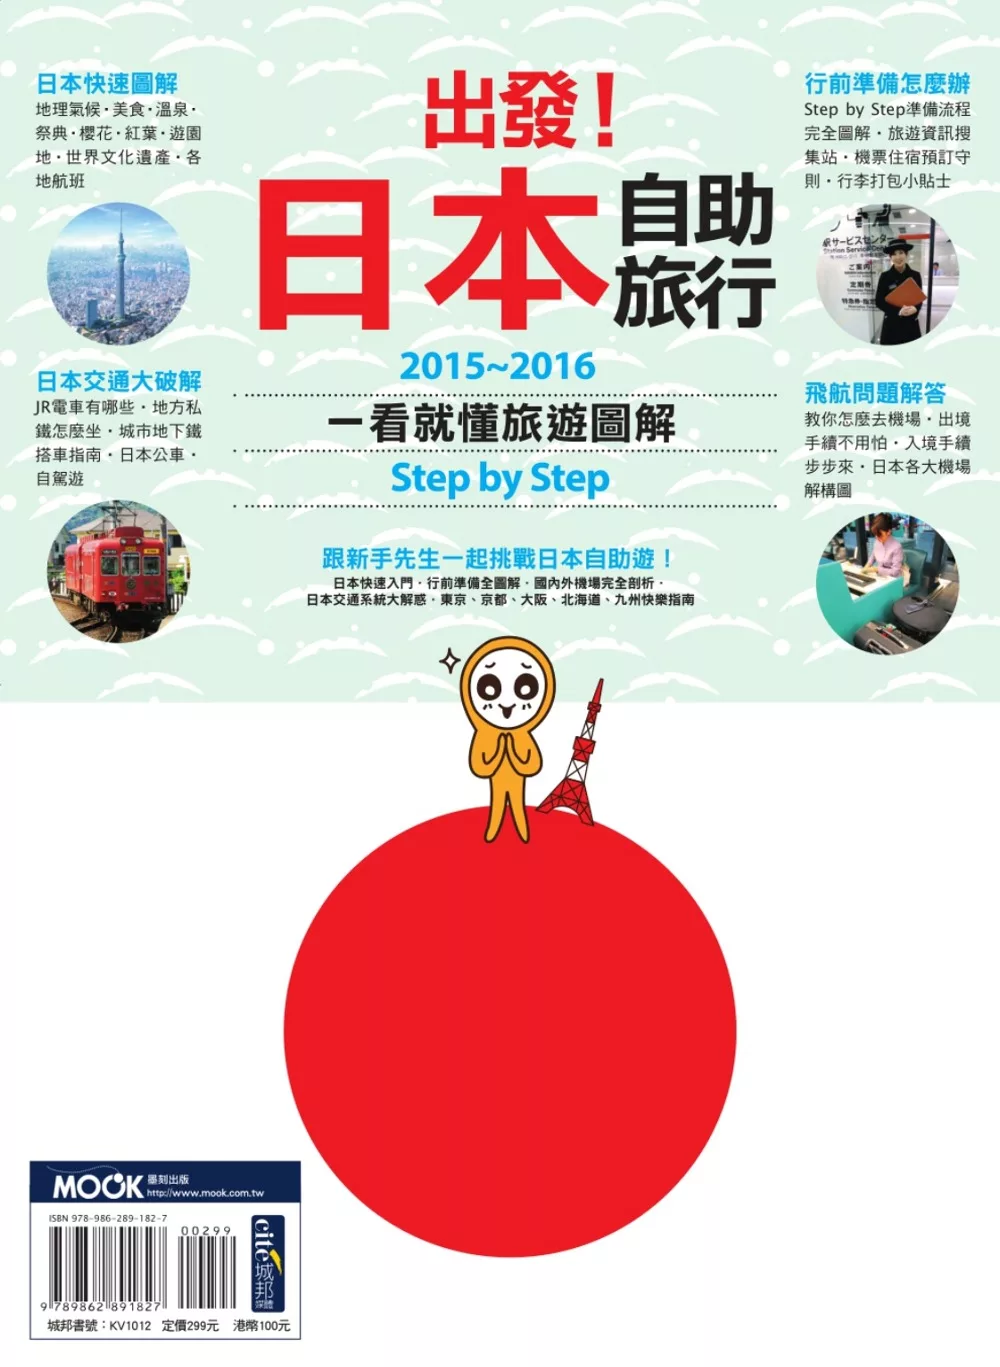 出發！日本自助旅行：一看就懂 旅遊圖解Step by Step 2015-2016 (電子書)